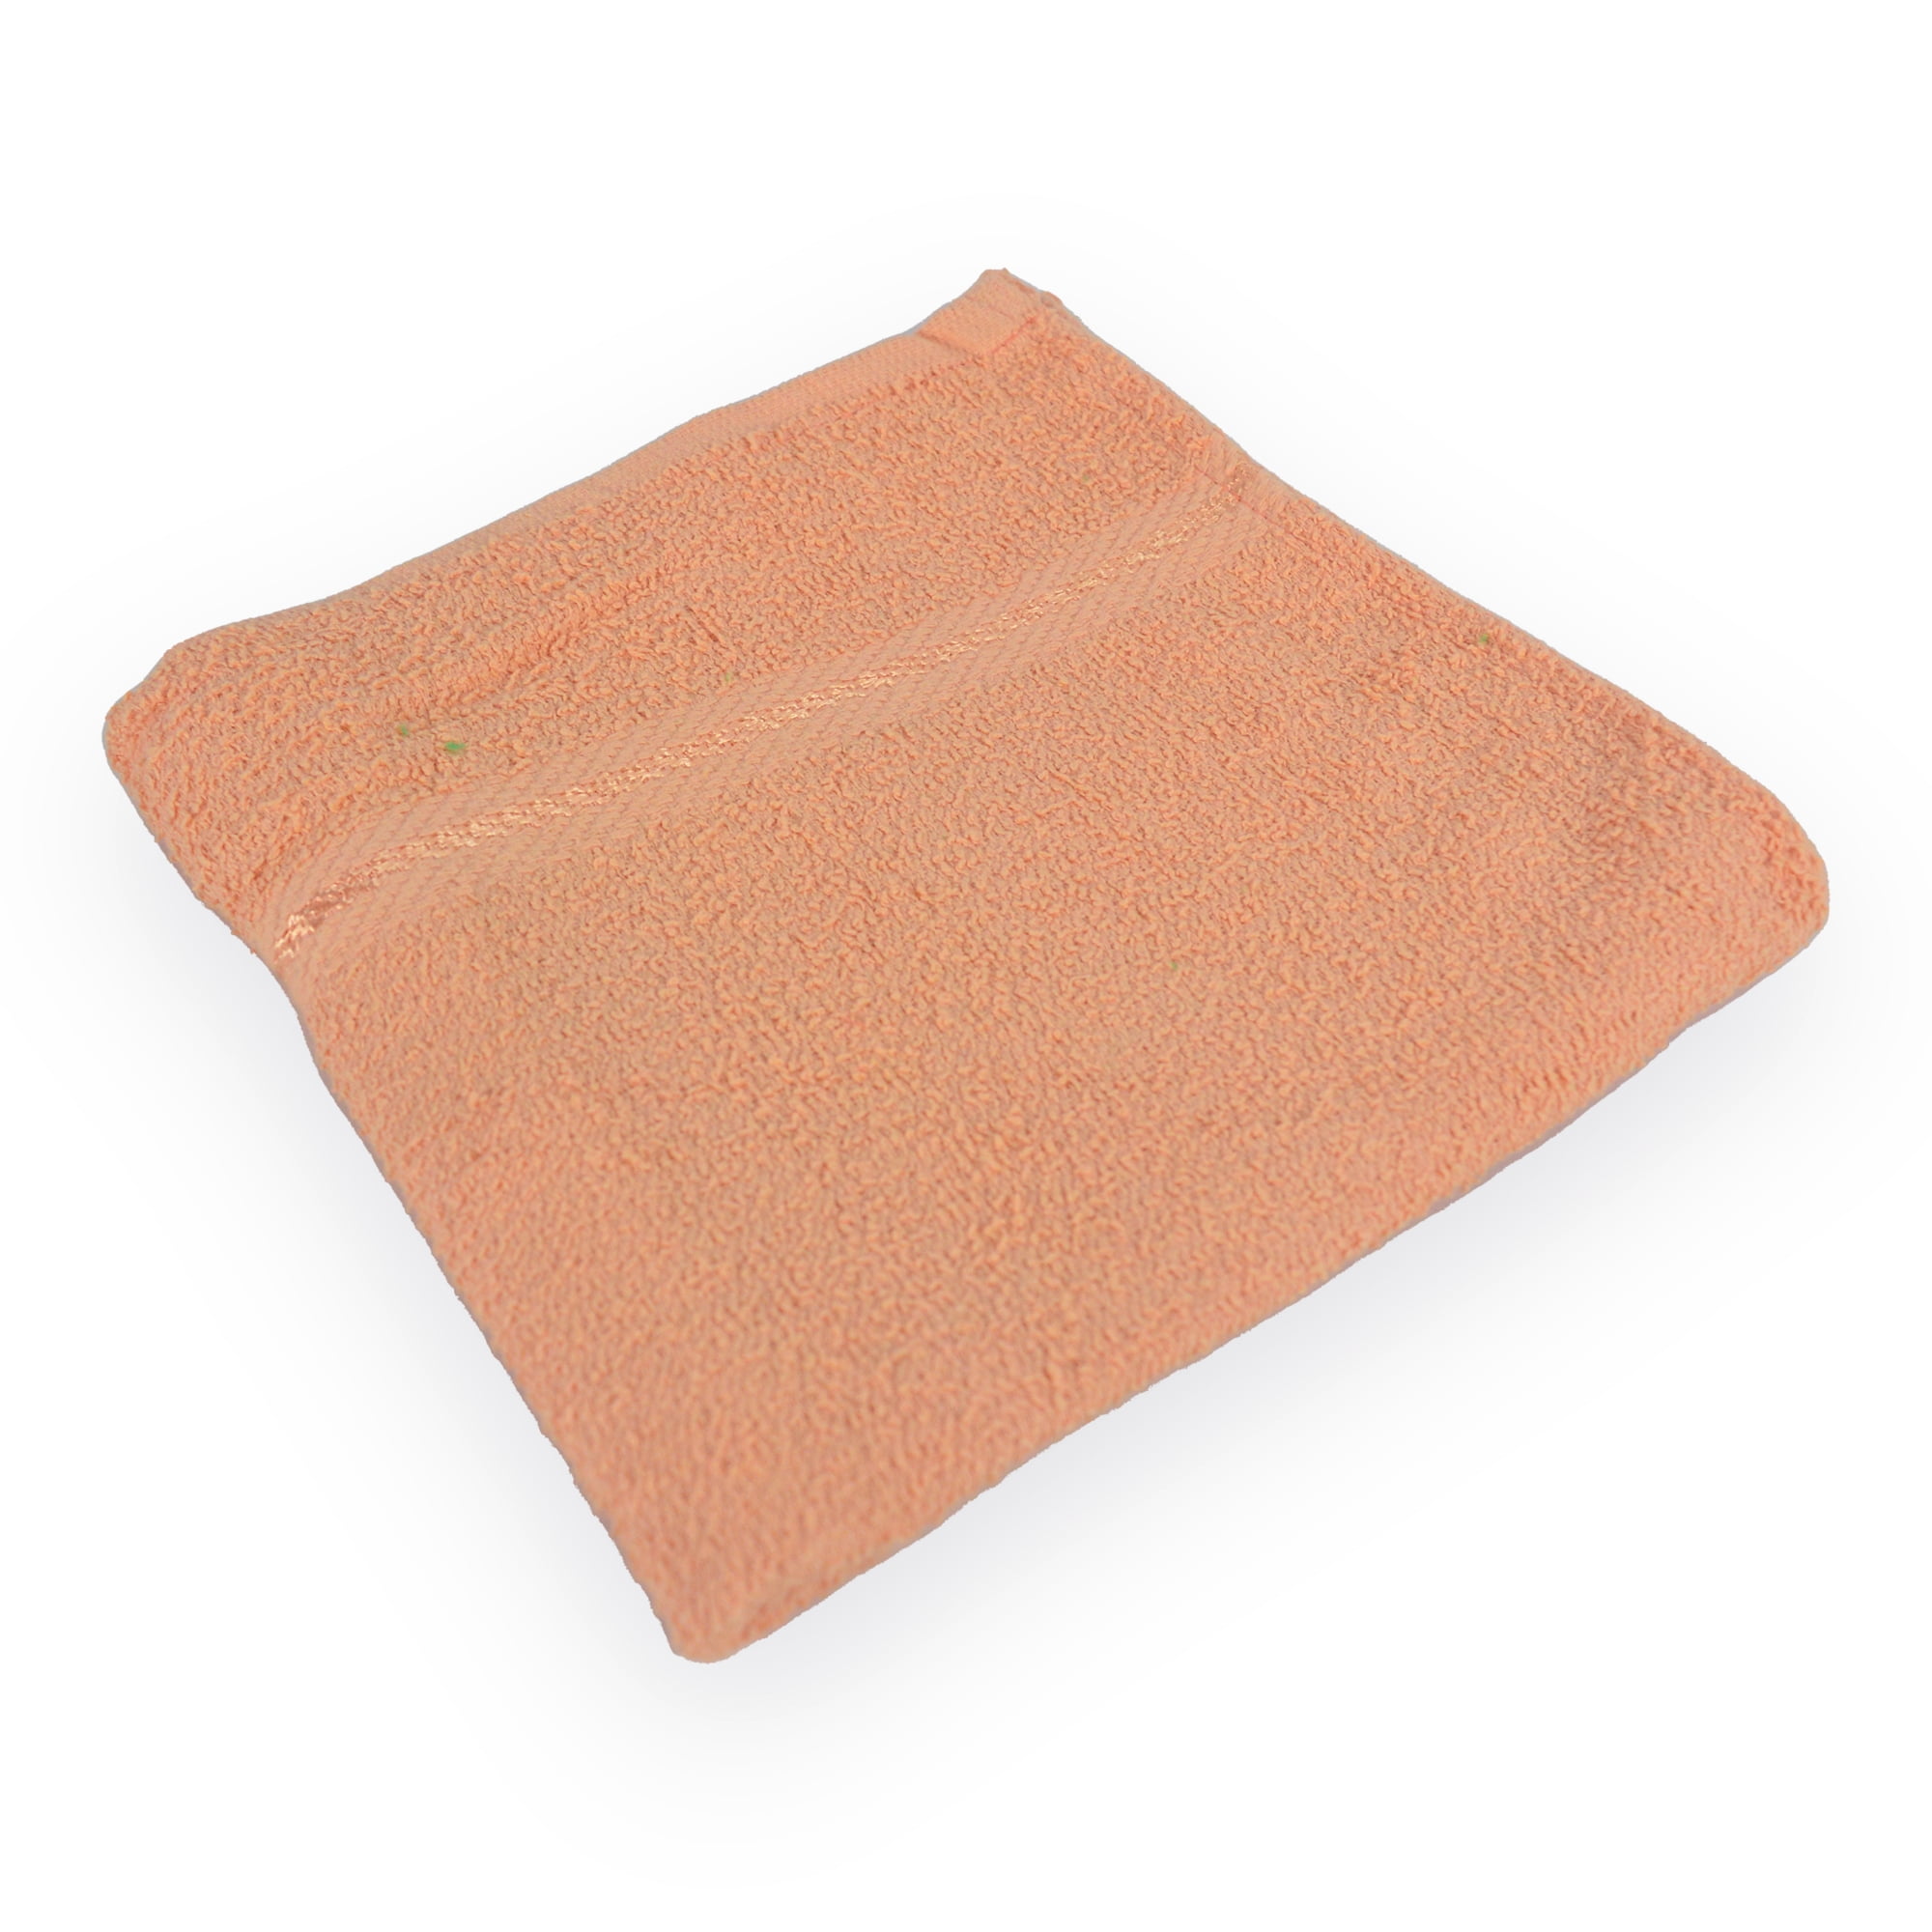 Standard Bath Towel Cotton 20x40 (Inches) Peach